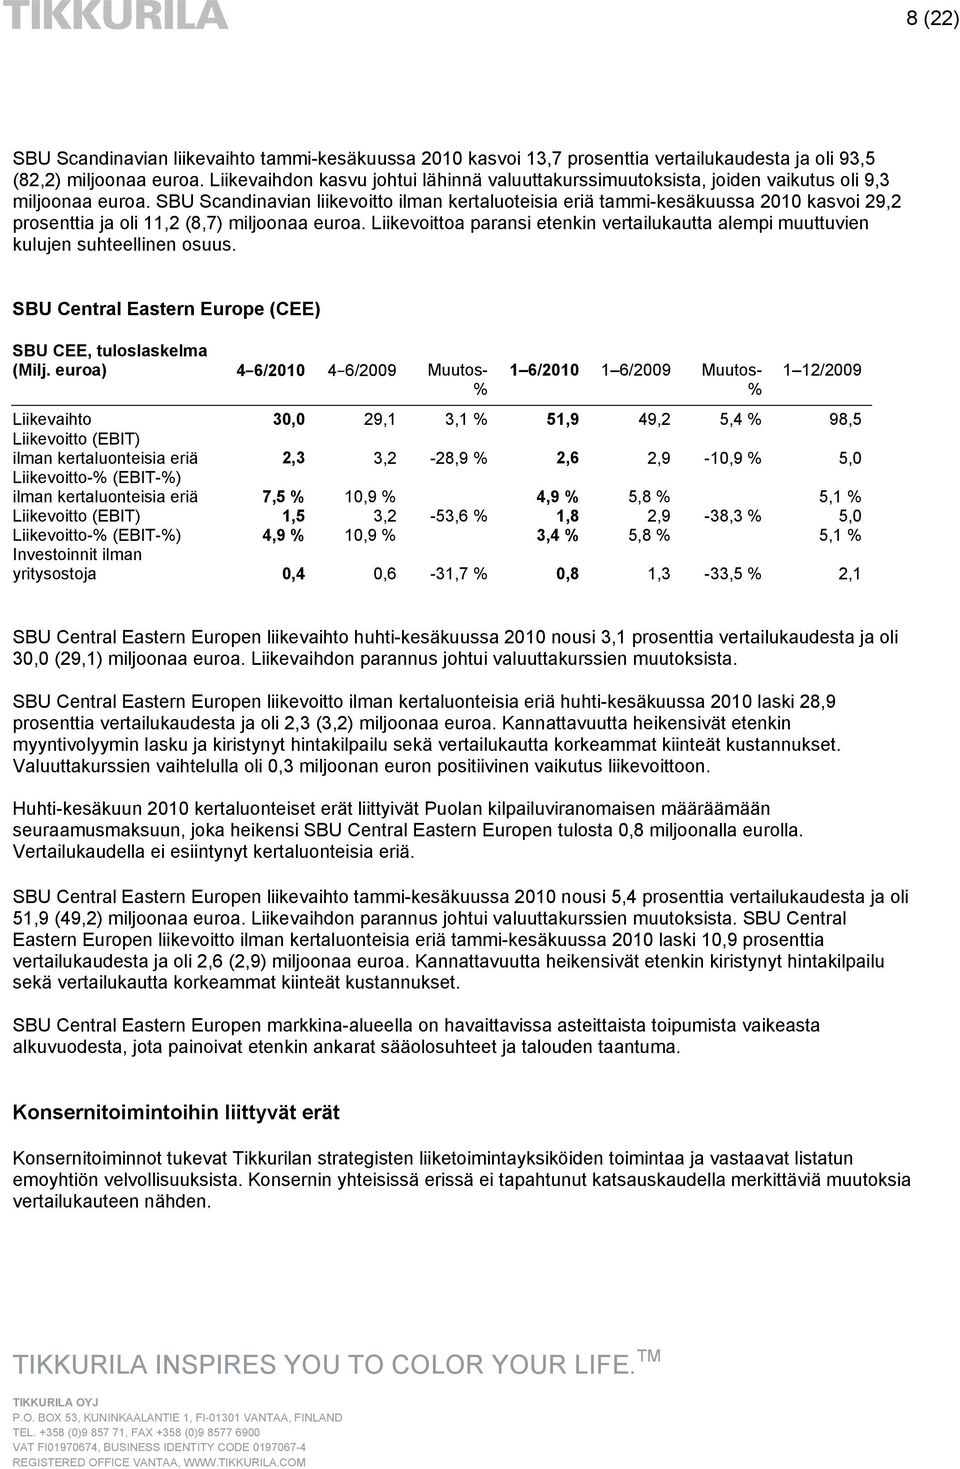 SBU Scandinavian liikevoitto ilman kertaluoteisia eriä tammi-kesäkuussa 2010 kasvoi 29,2 prosenttia ja oli 11,2 (8,7) miljoonaa euroa.